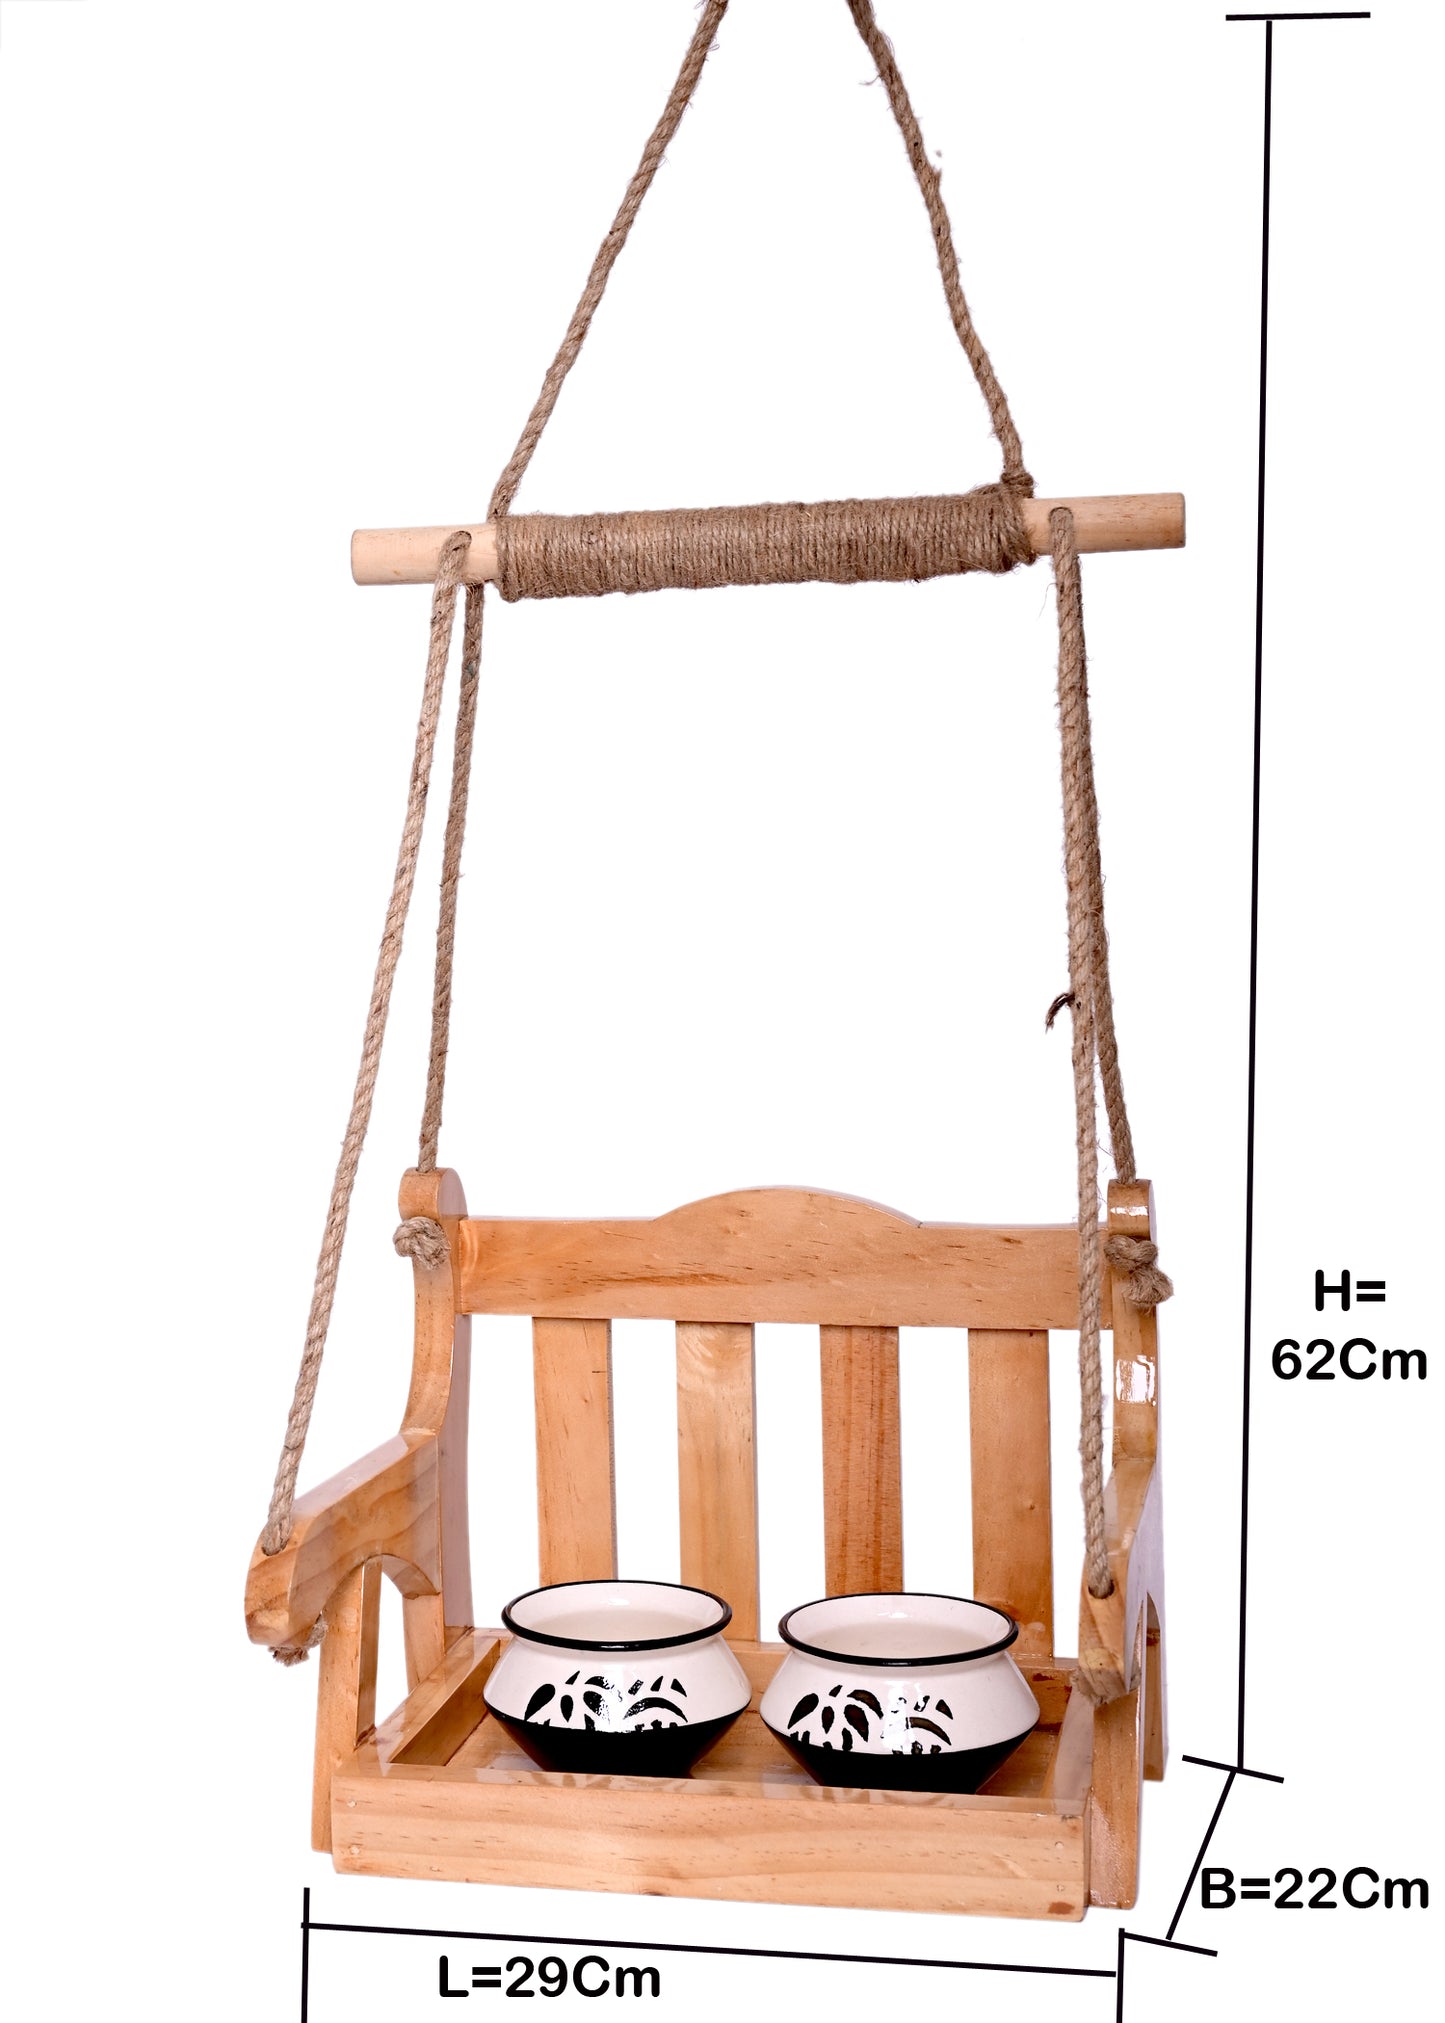 The Weaver's Nest Wooden Handcrafted Hanging Bird Feeder